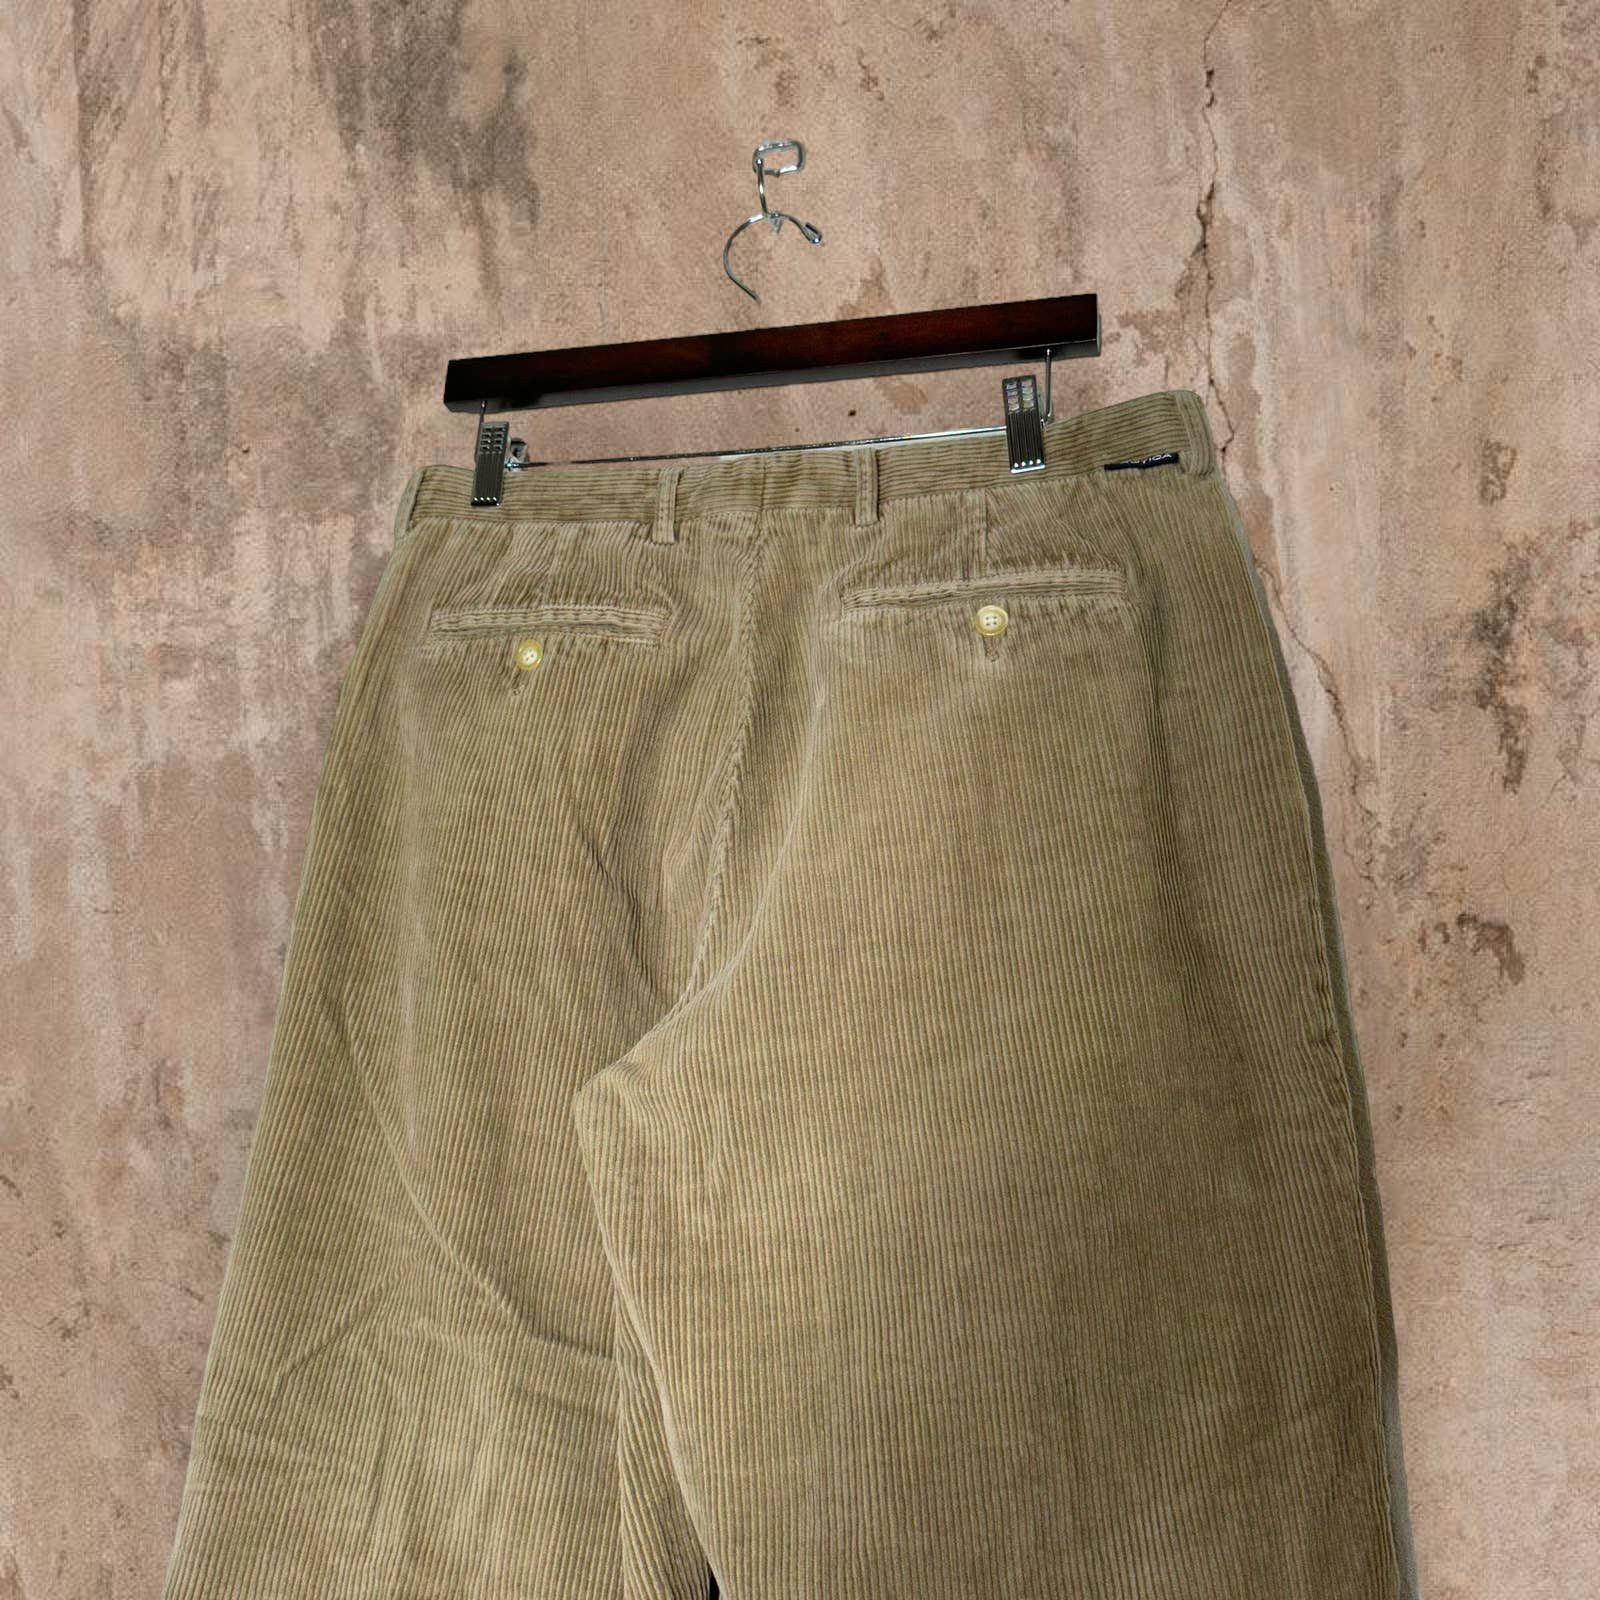 Vintage Vintage Nautica Corduroy Pants Tan Pleated Baggy Fit Y2K Size US 34 / EU 50 - 2 Preview